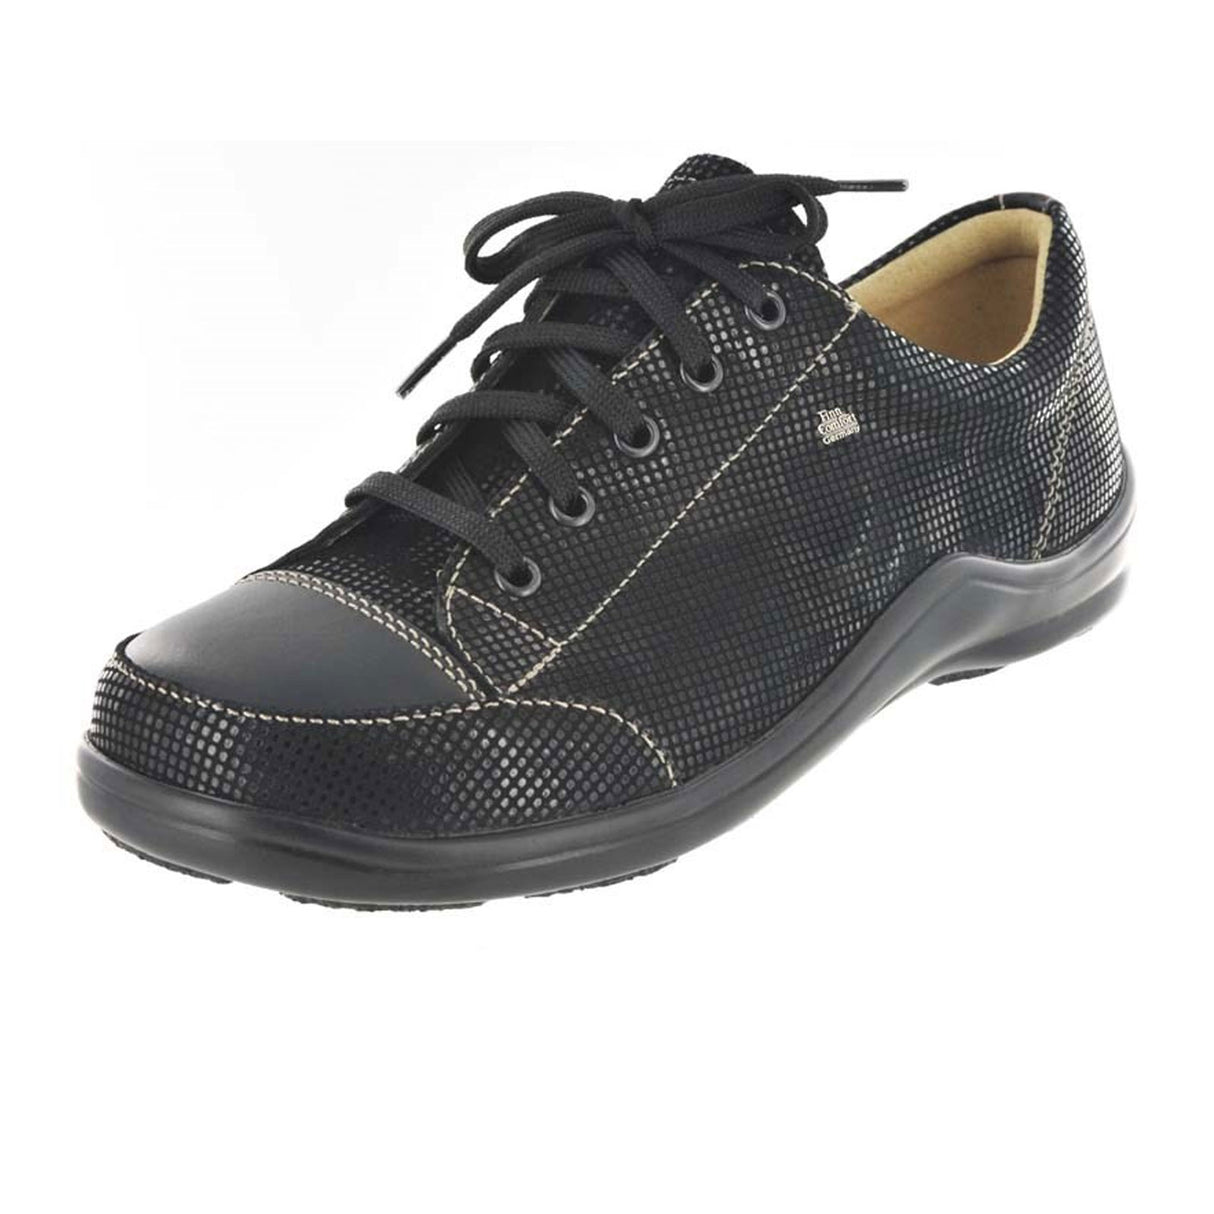 Finn Comfort Soho-S Sneaker (Women) - Black Shimmer Dress-Casual - Lace Ups - The Heel Shoe Fitters